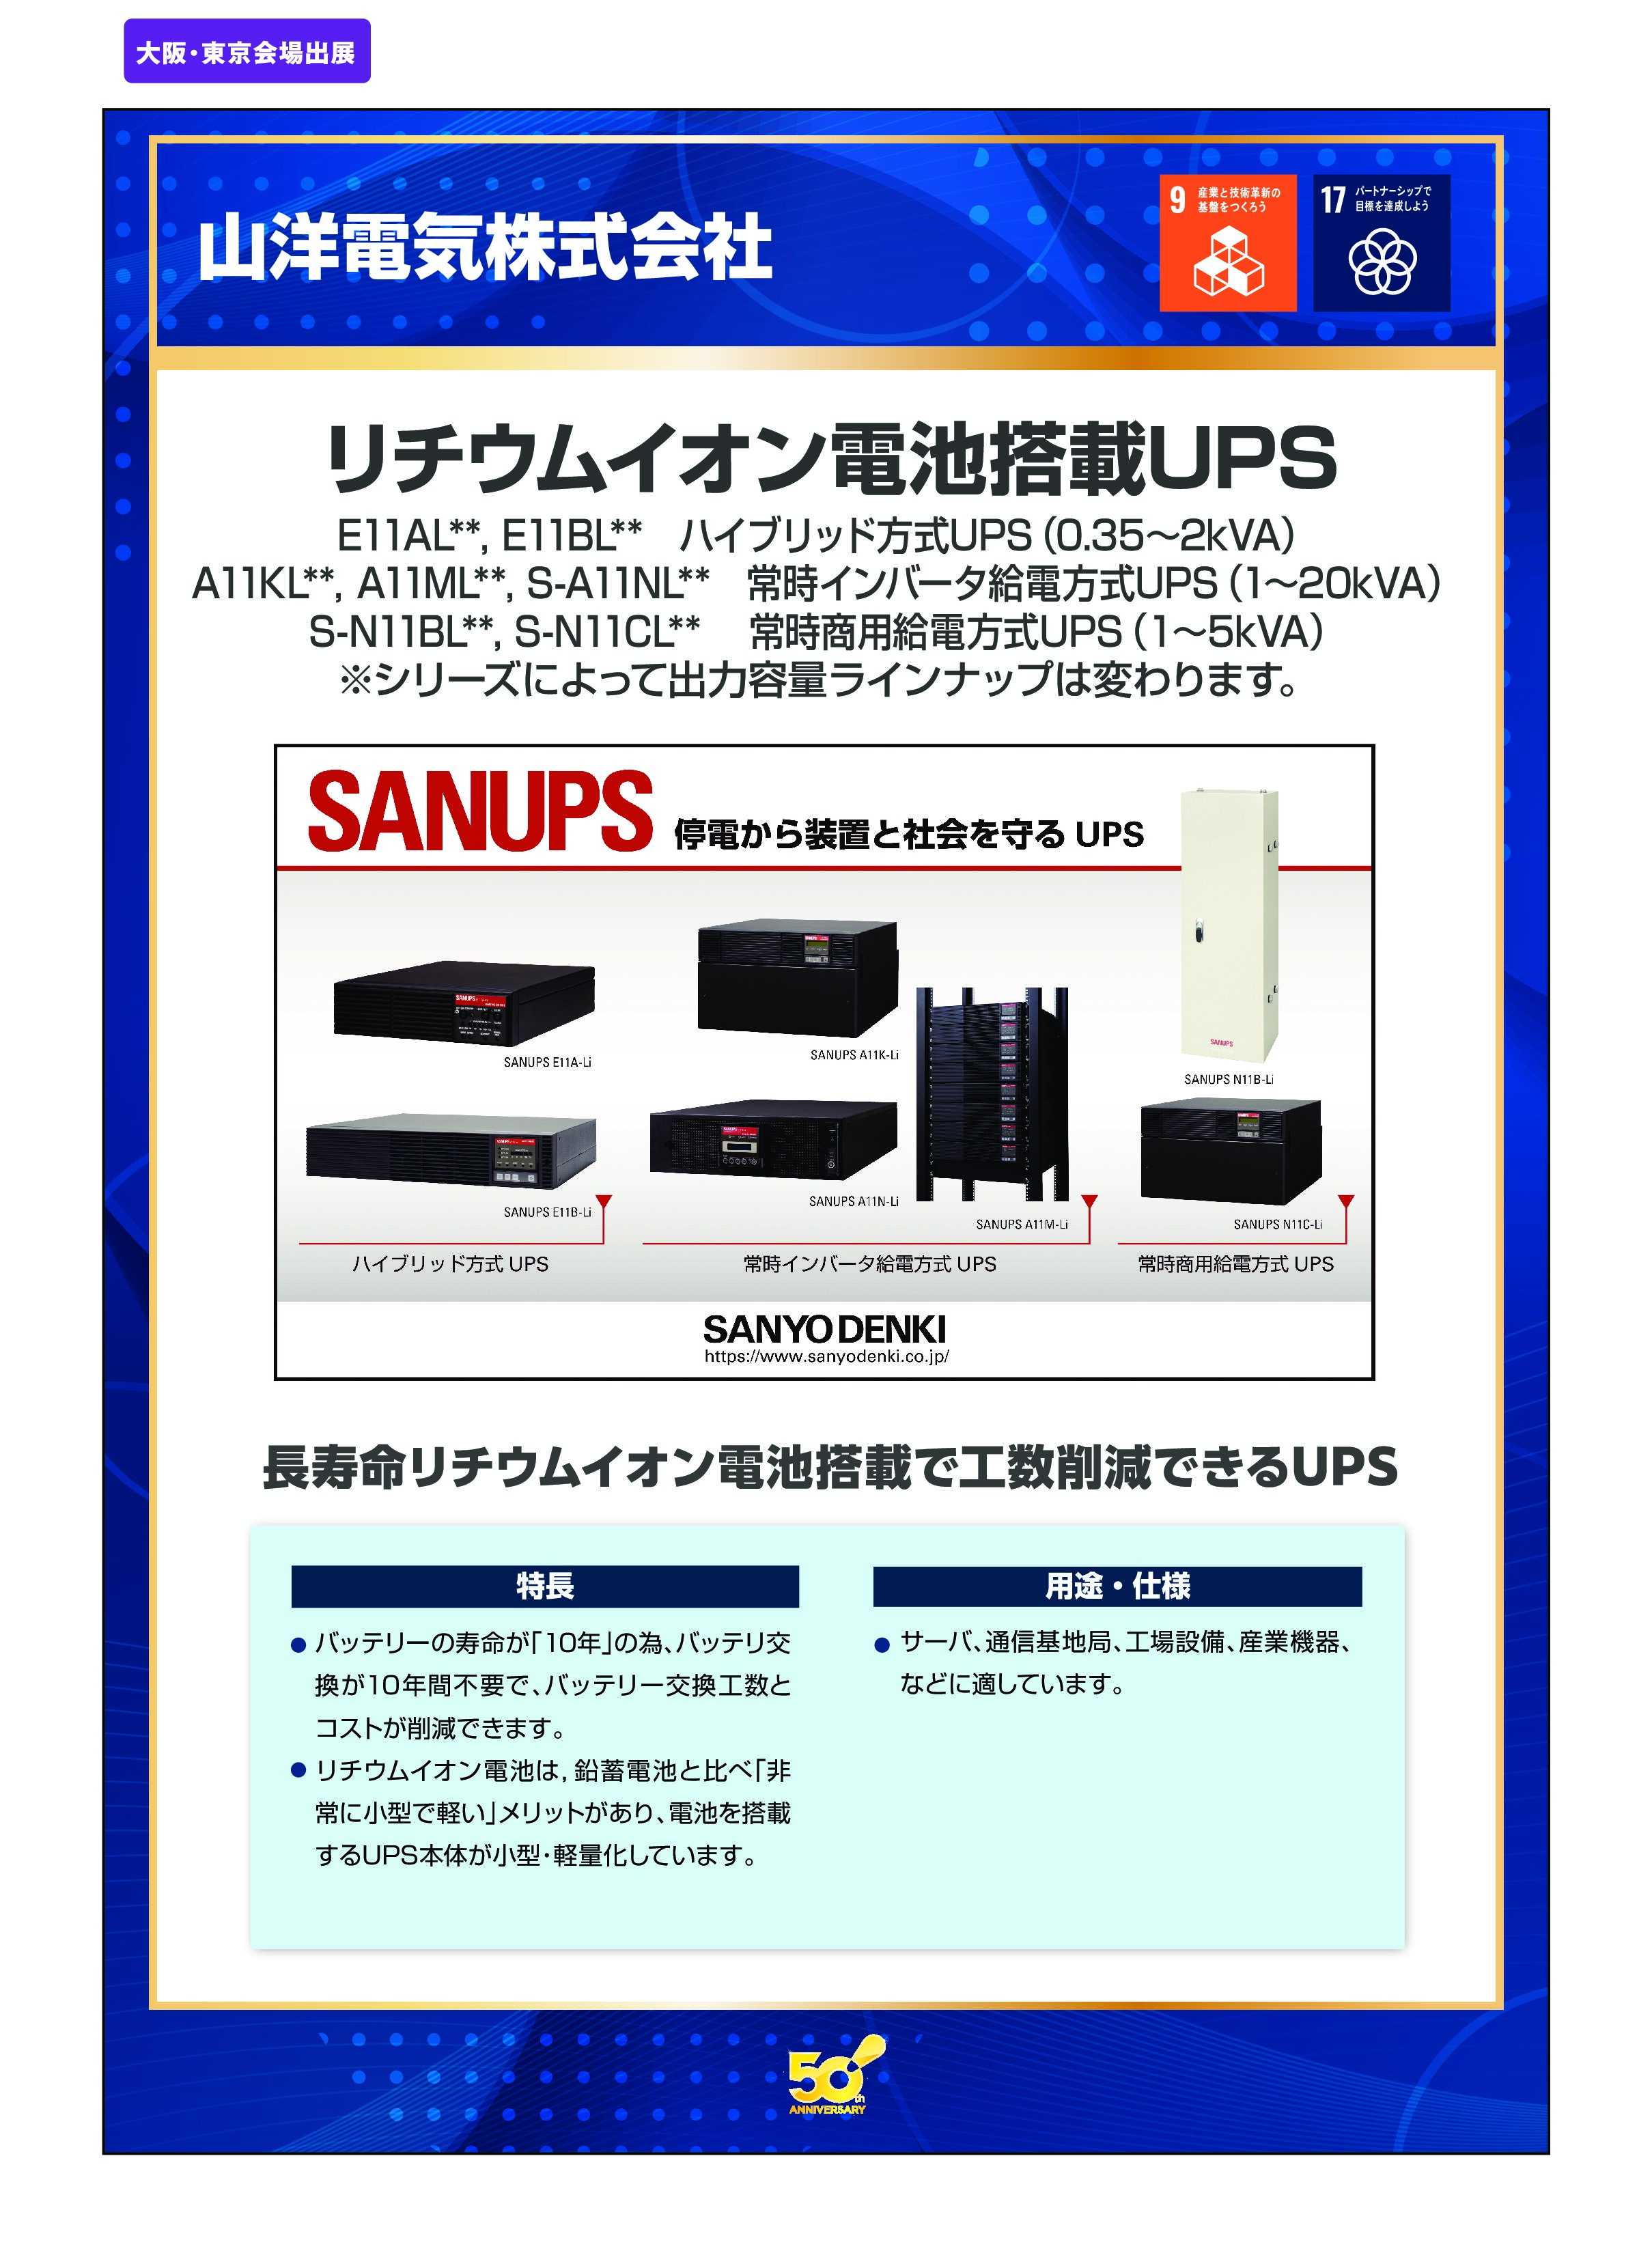 「リチウムイオン電池搭載UPS」山洋電気株式会社の画像